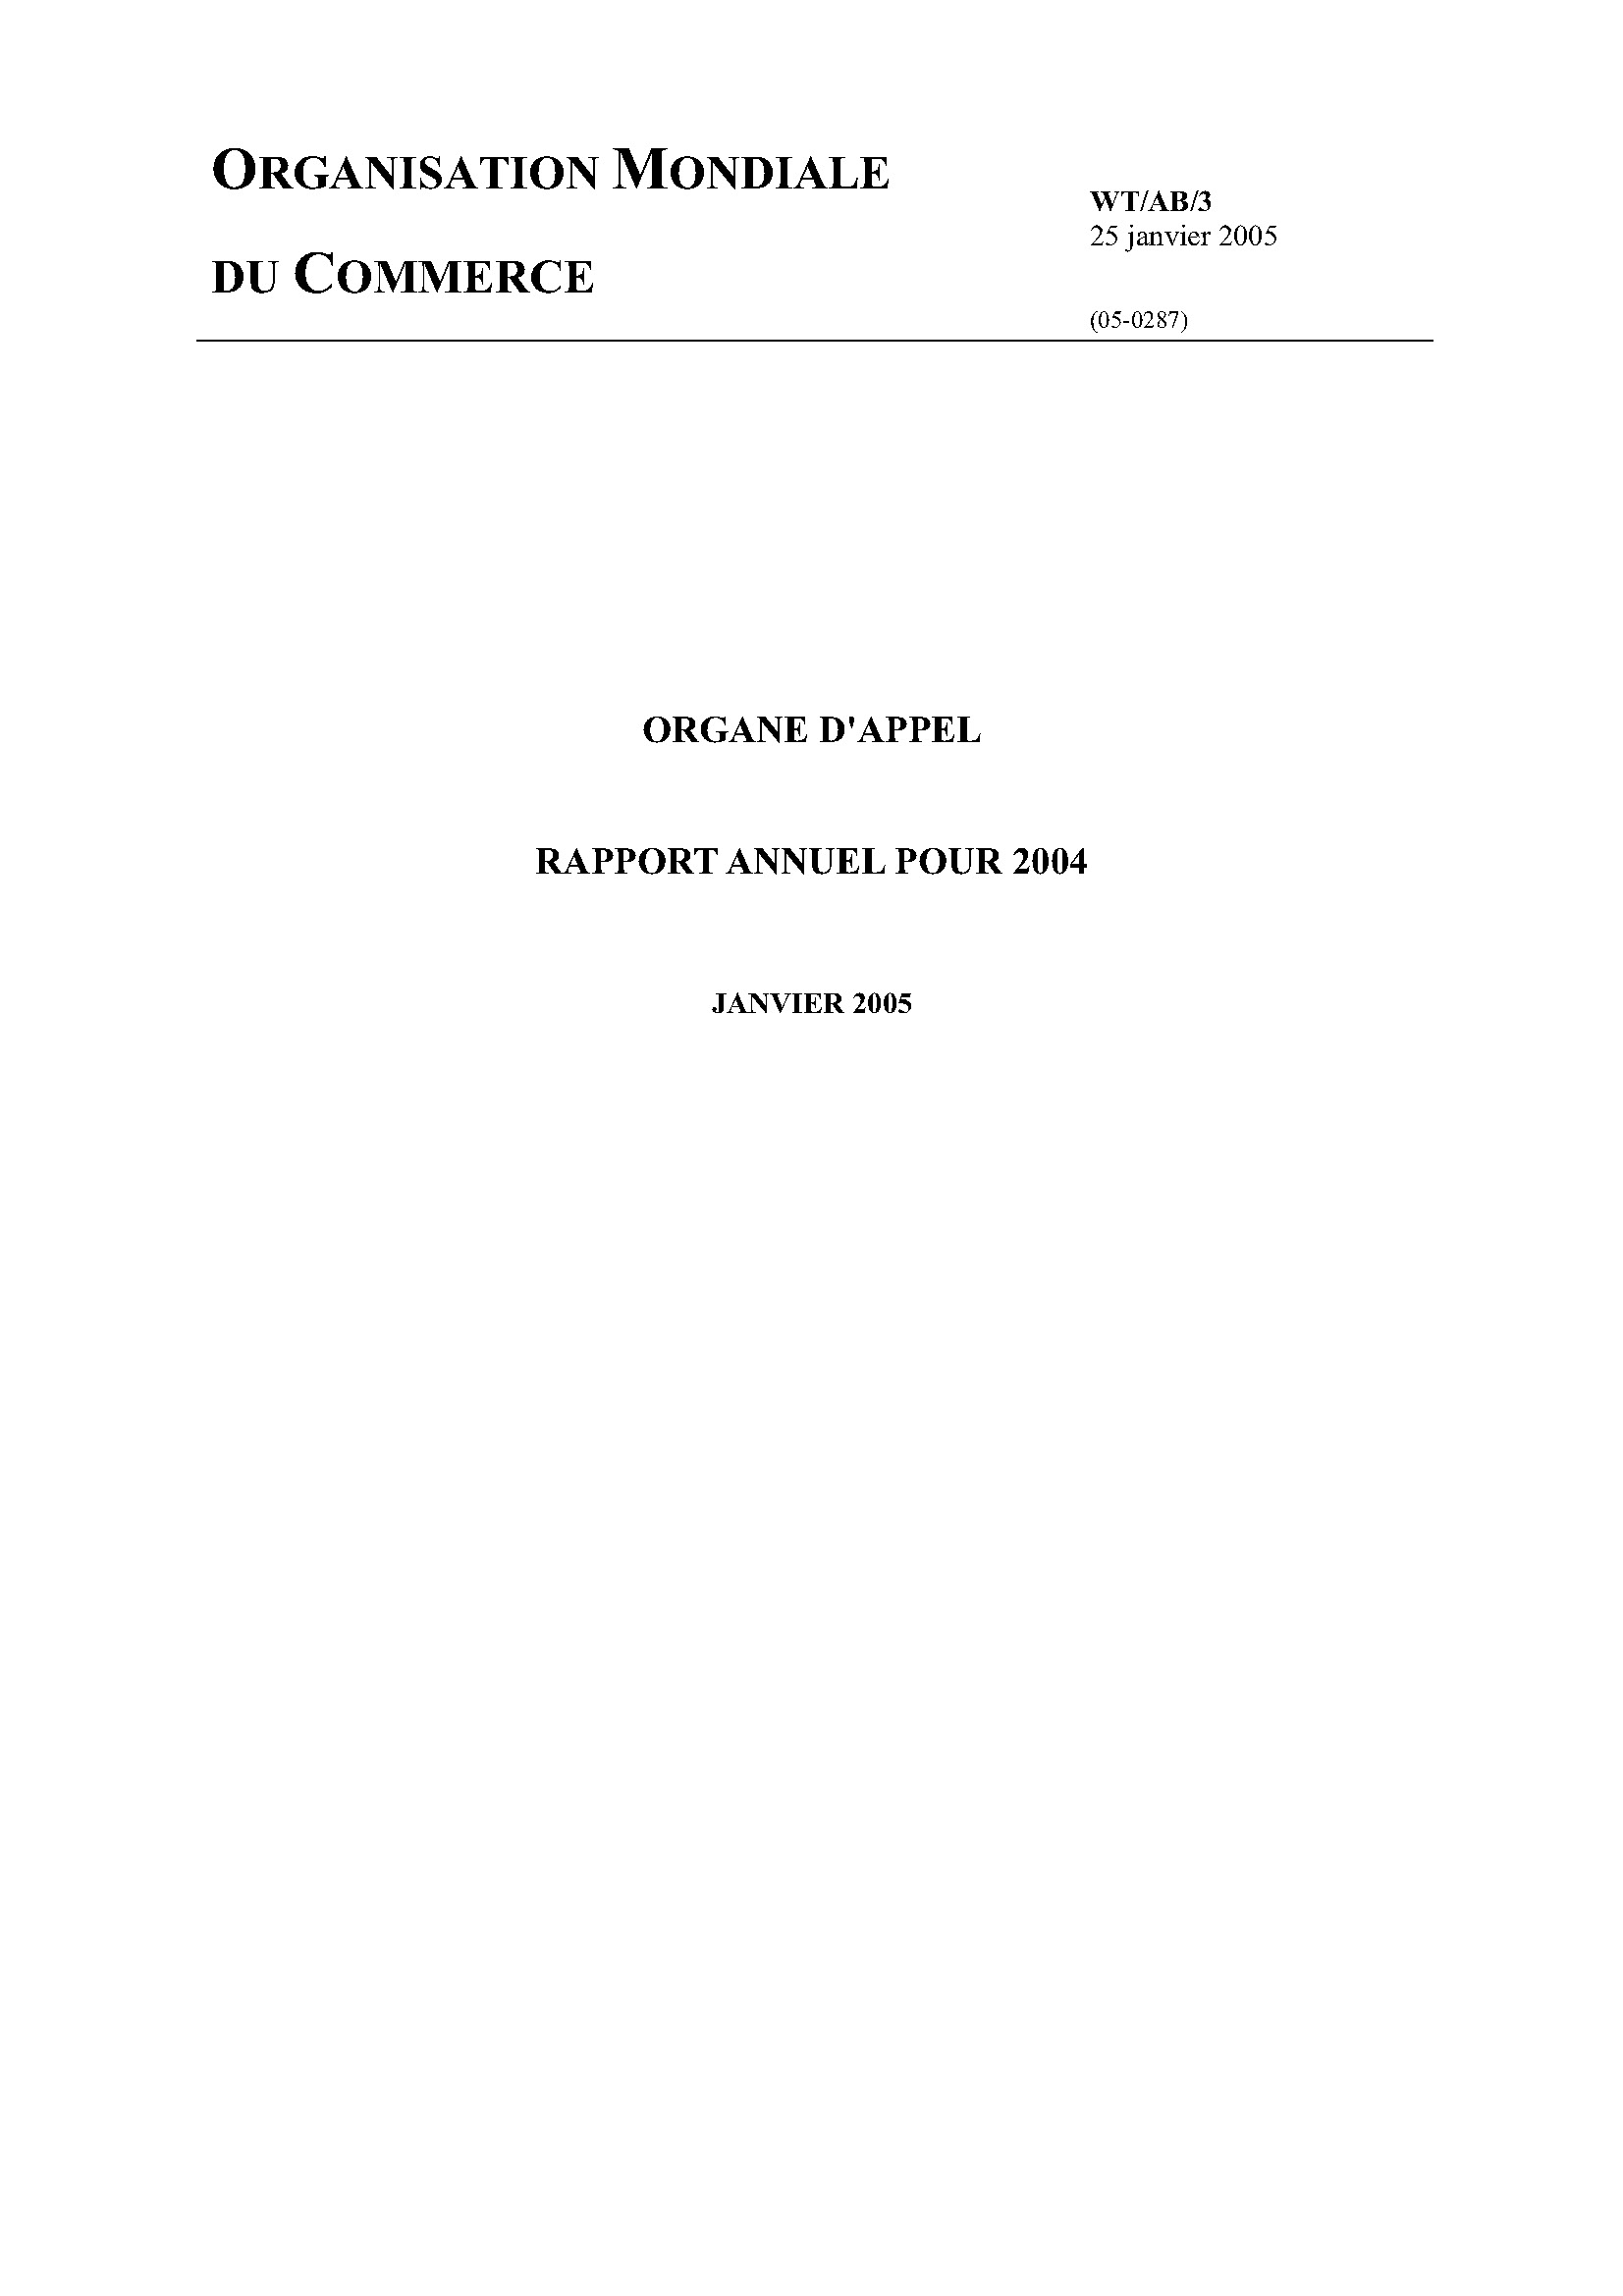 image of Rapport annuel de l’organe d’appel pour 2004